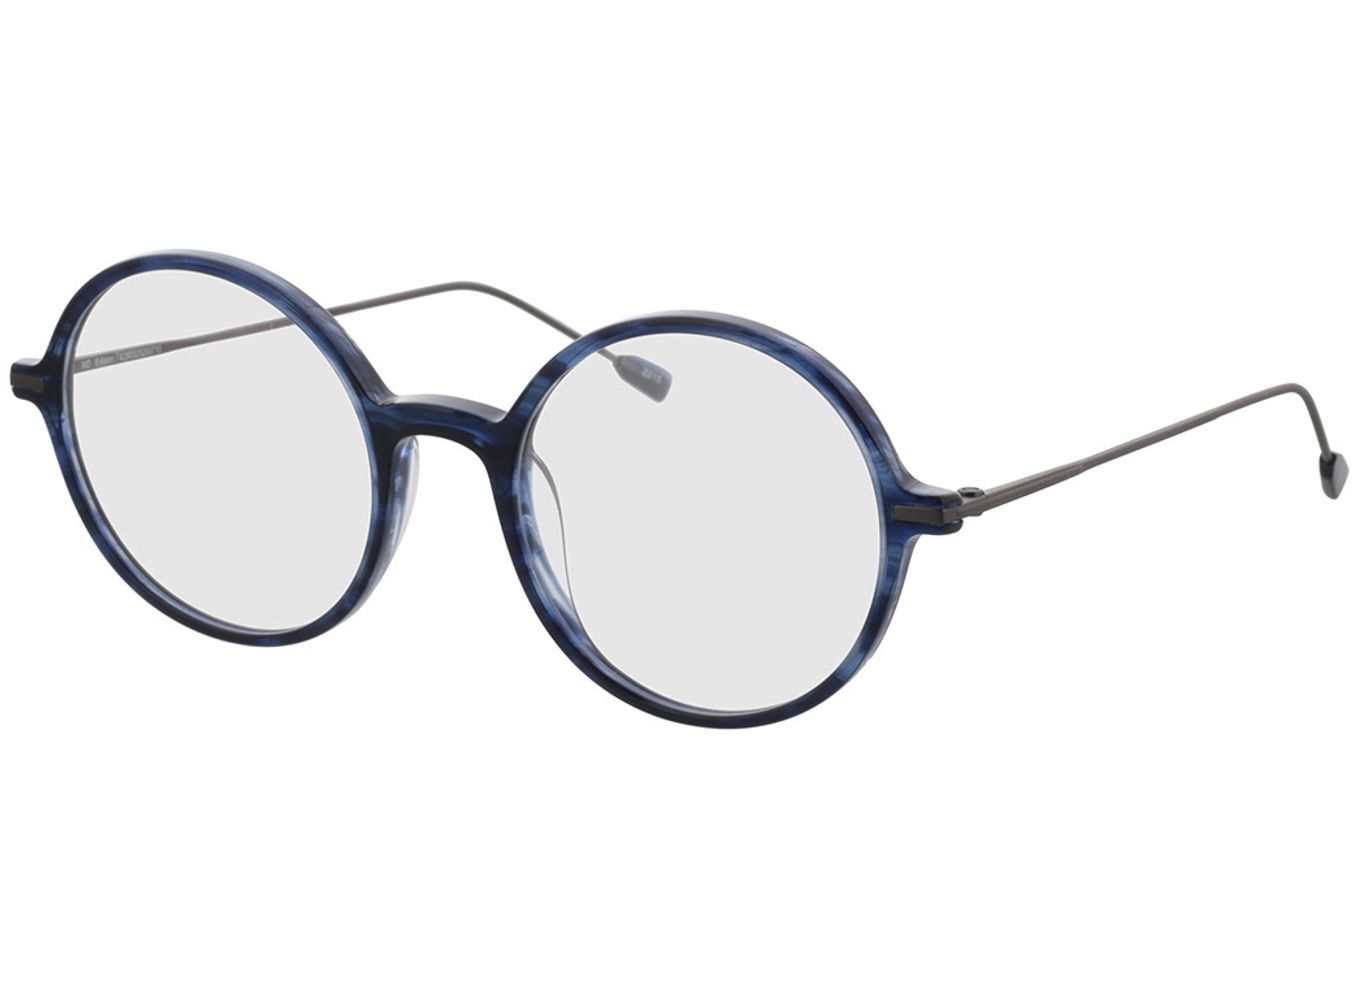 Edison - blau/anthrazit Blaulichtfilter-Brille, Vollrand, Rund von Brille24 Collection